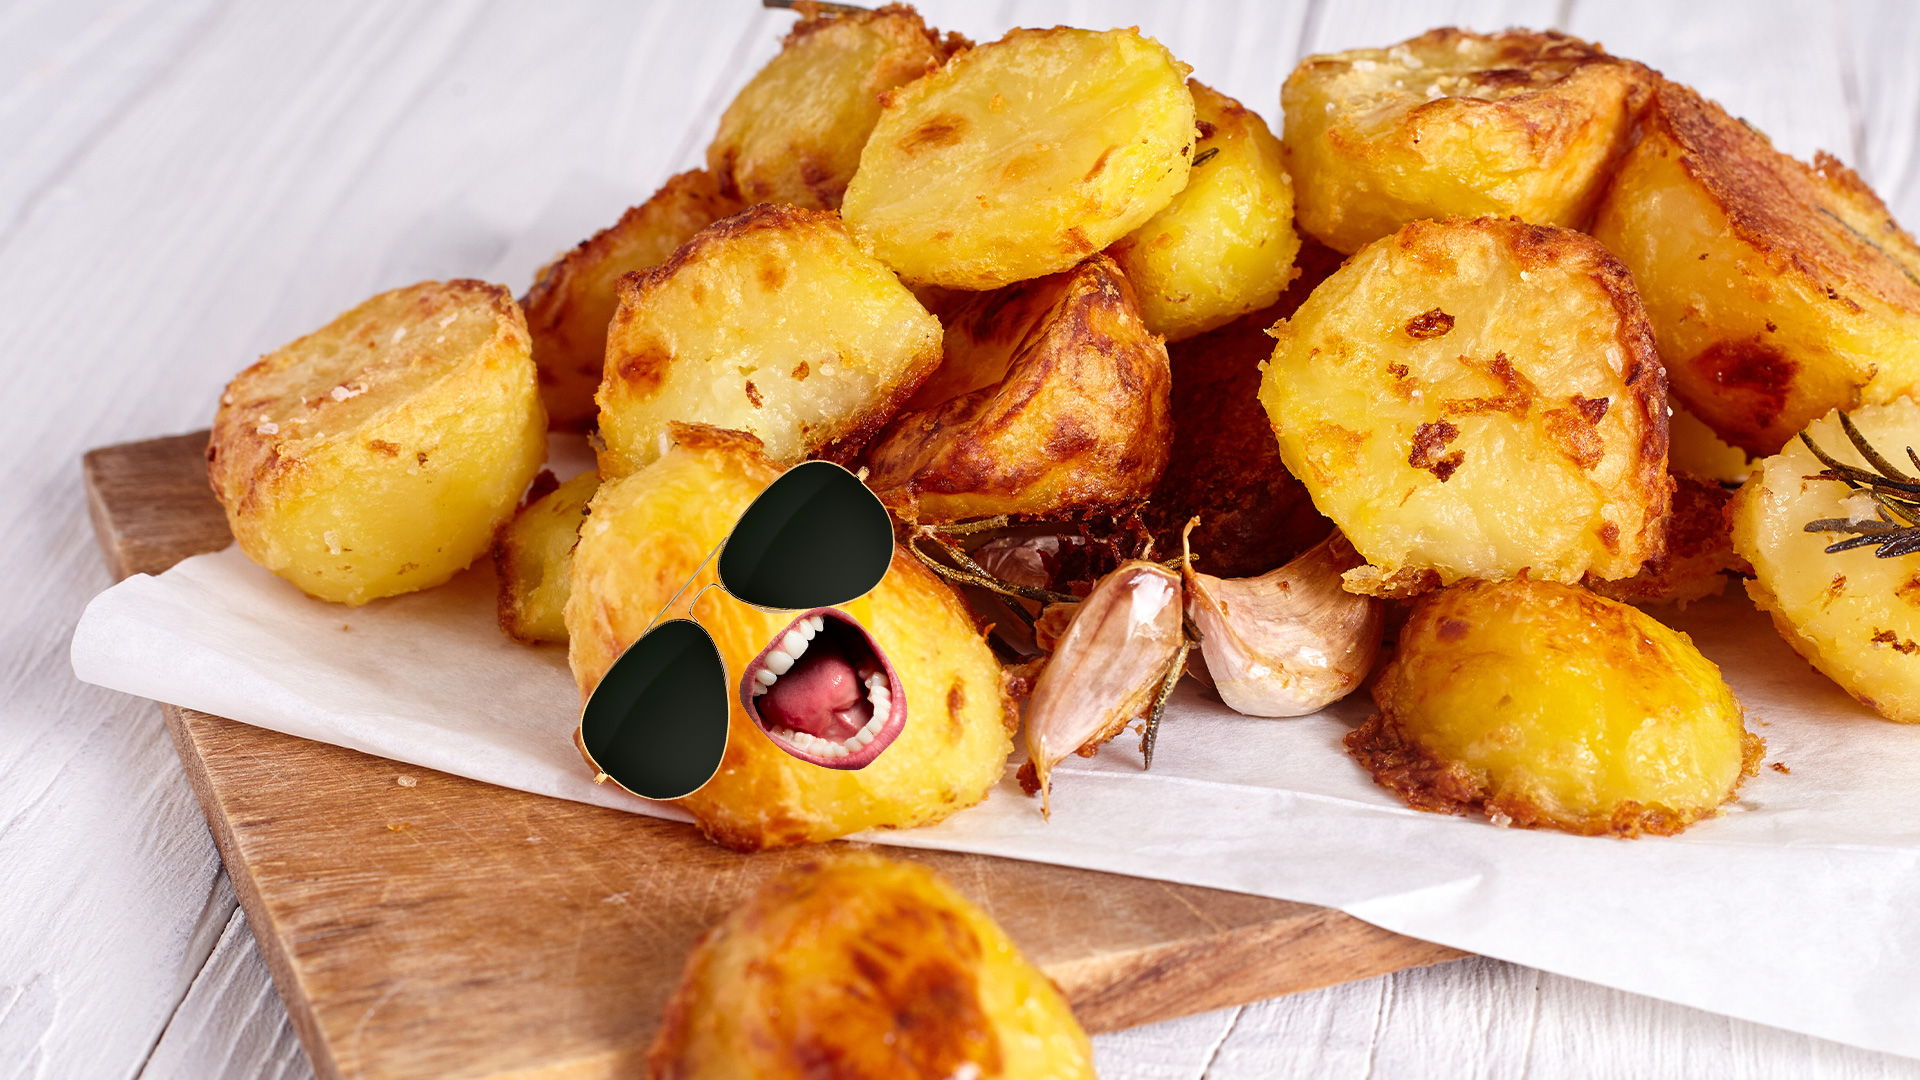 A plate of roast potatoes